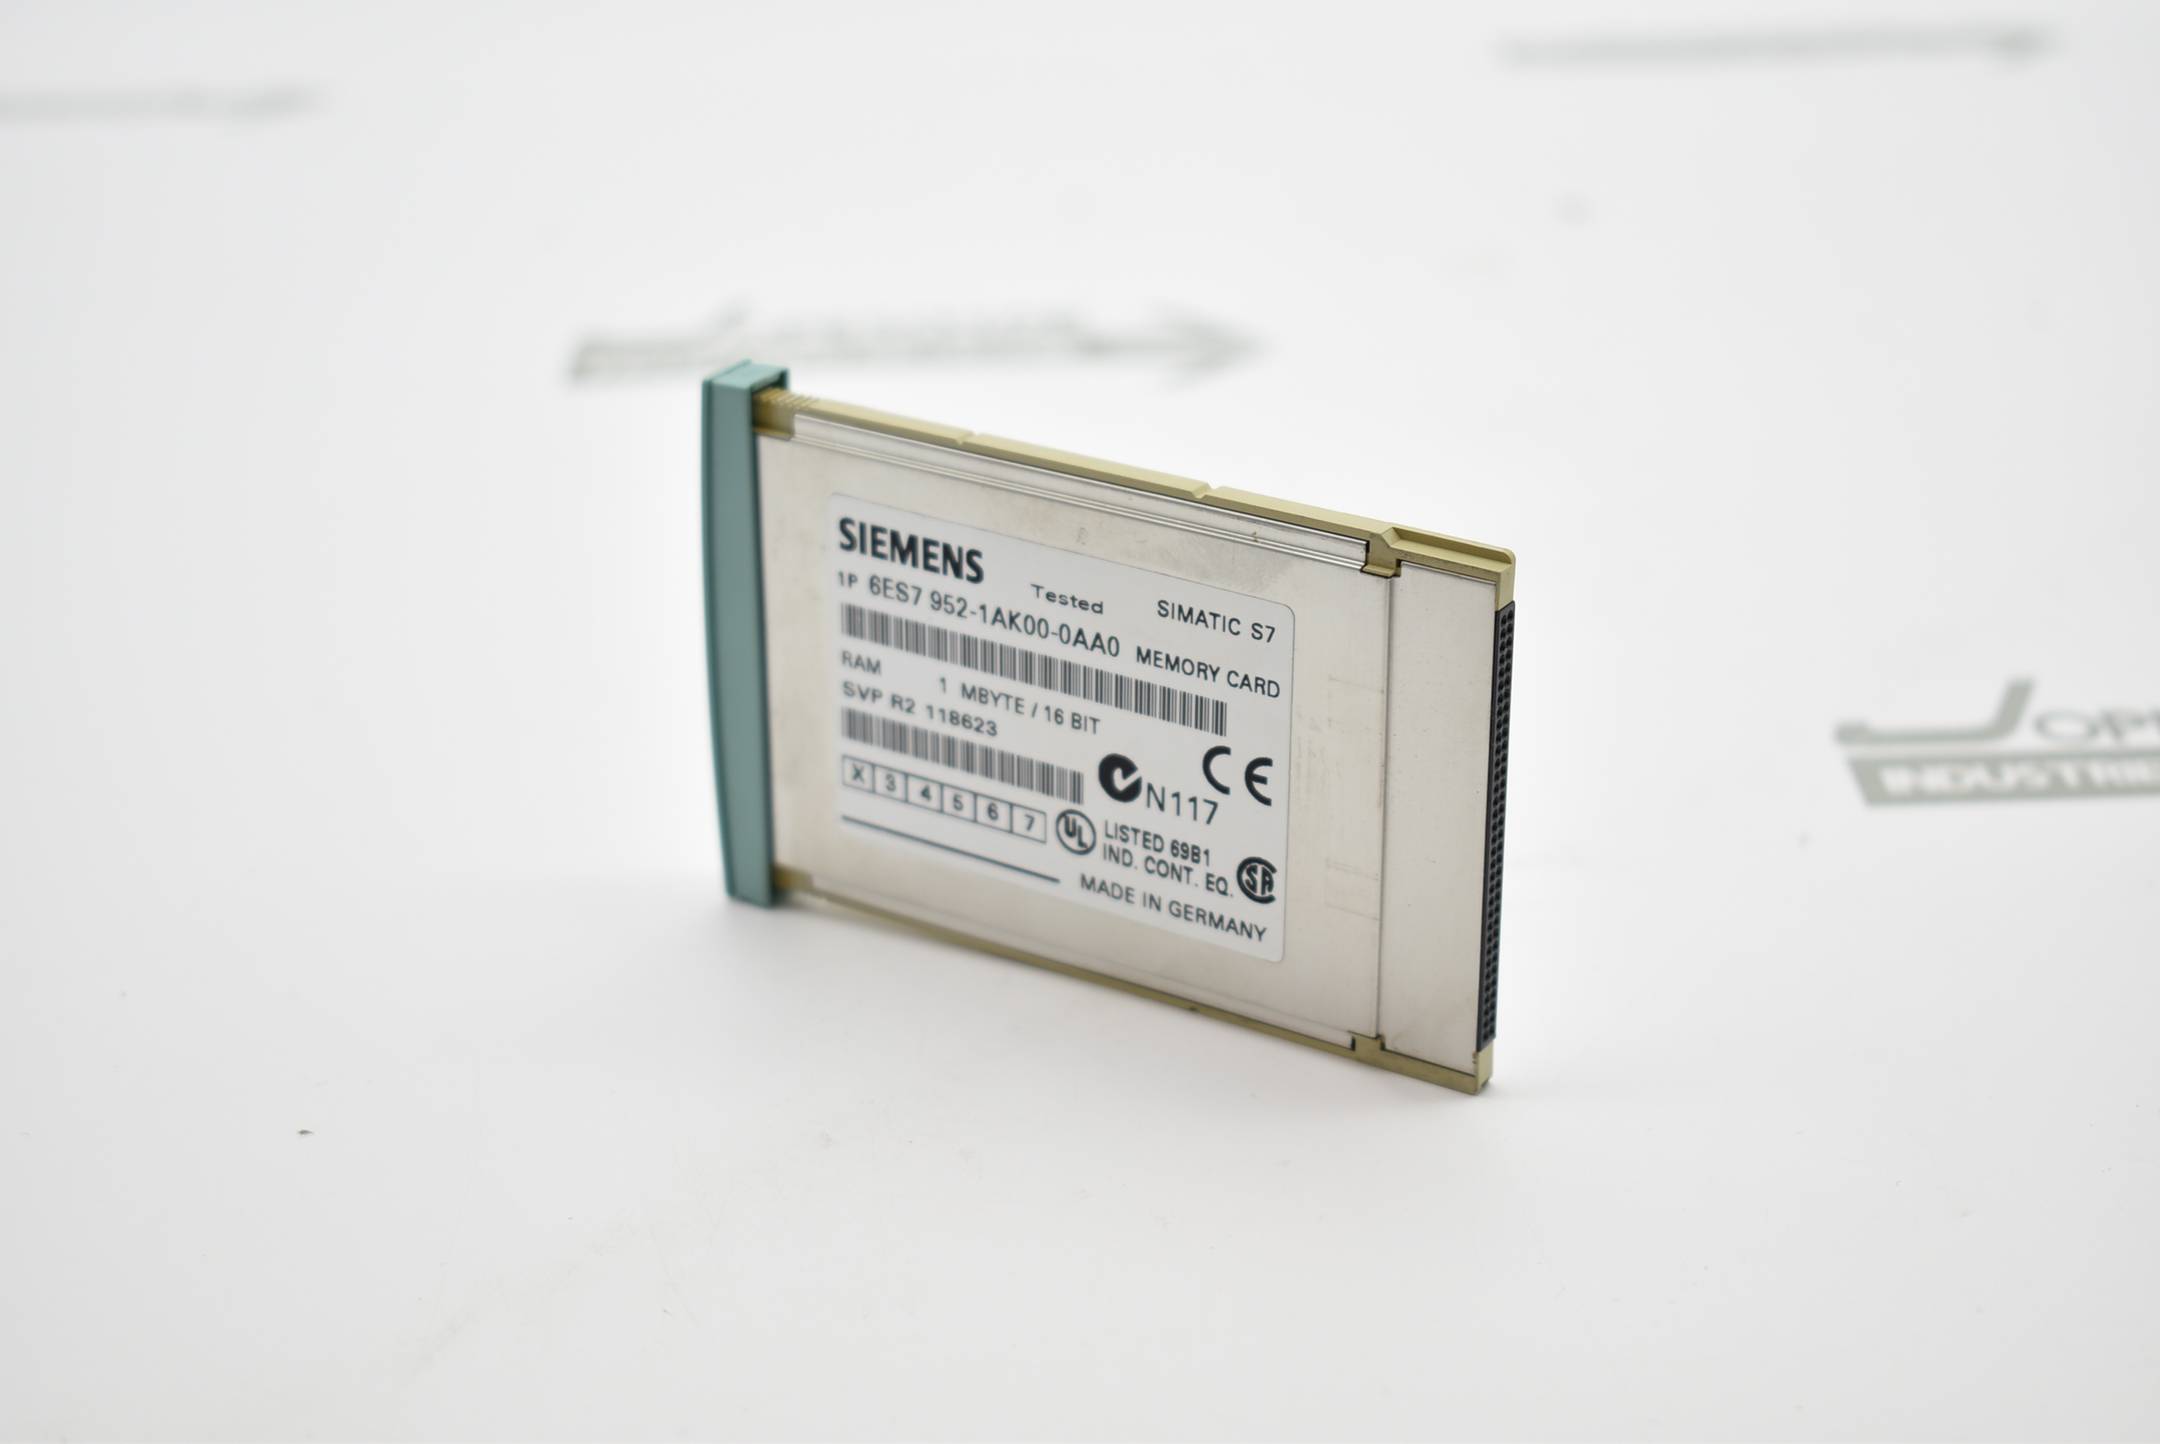 Siemens simatic S7 1MB Memory Card 6ES7 952-1AK00-0AA0 ( 6ES7952-1AK00-0AA0 )